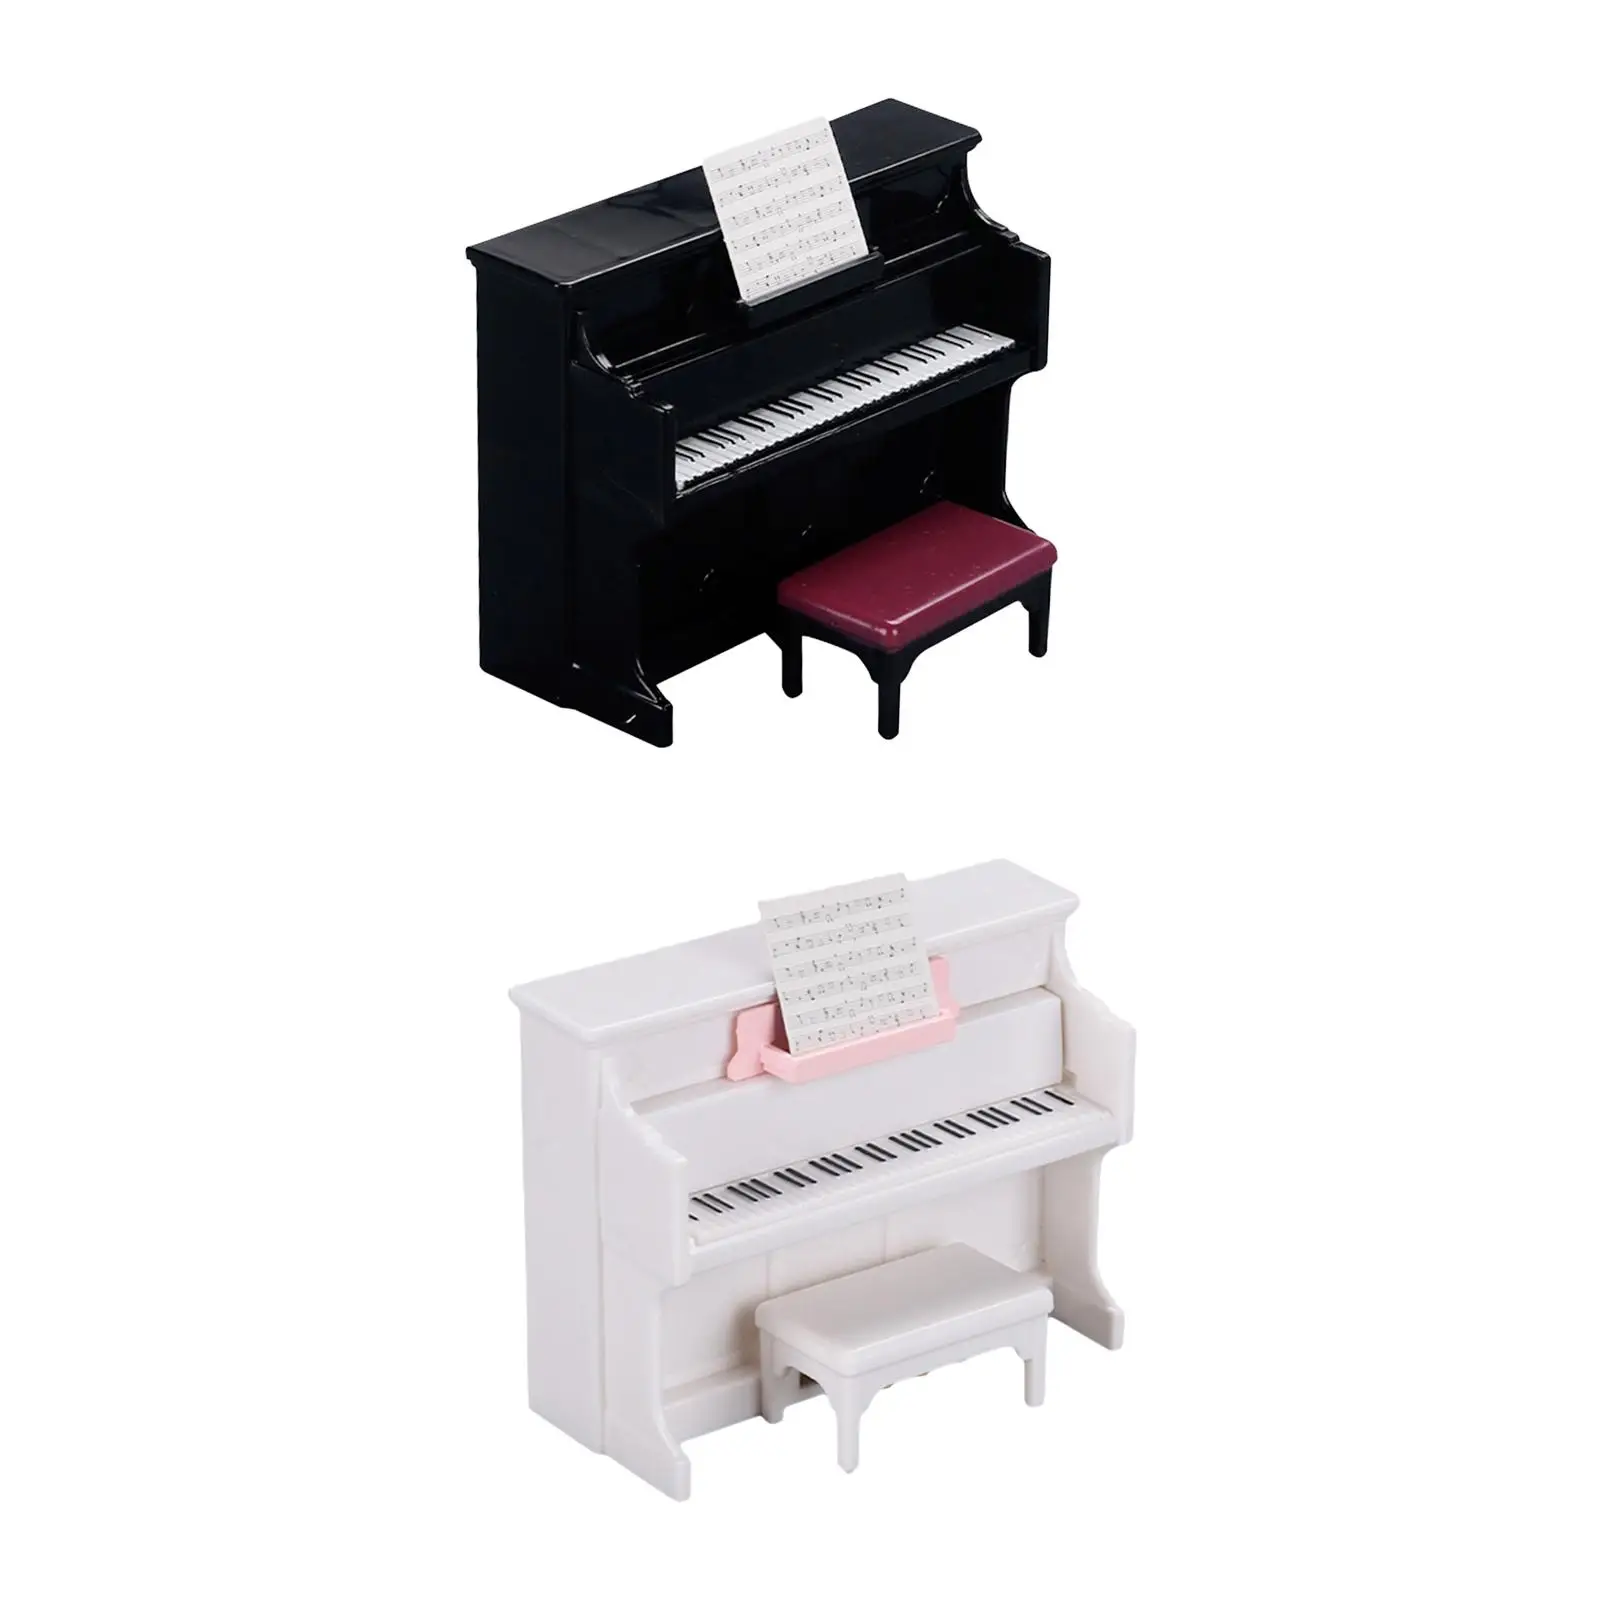 

Пианино для кукольного домика с табуретом 1:12, элегантные Миниатюрные аксессуары для кукольного домика, украшение для гостиной «сделай сам»